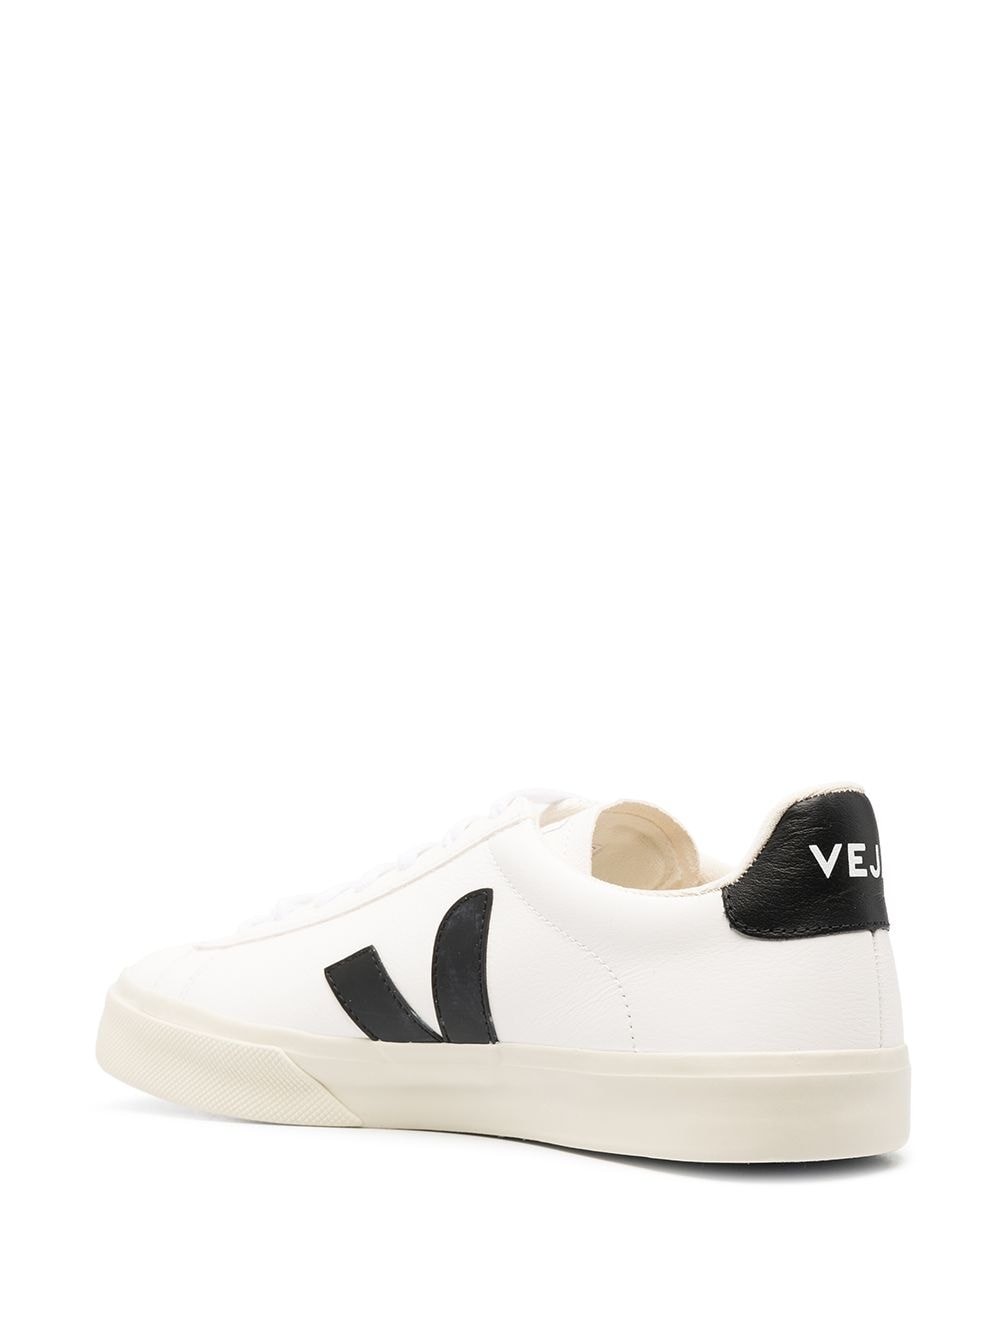 Veja Sneakers Campo CPM051537 WHITE/BLACK - Nuova Collezione Primavera Estate 2021